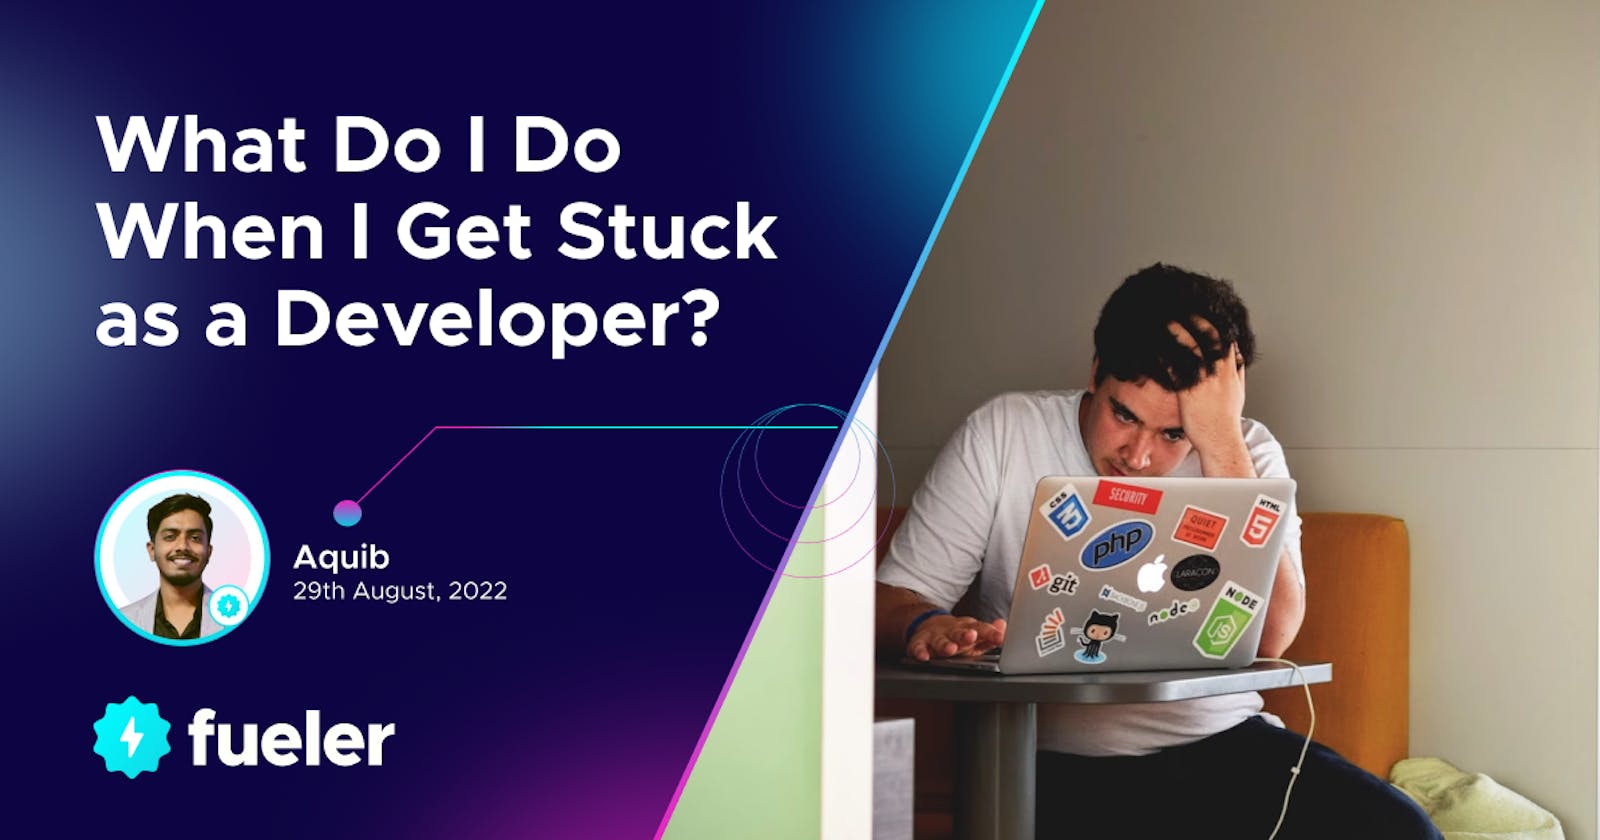 What do I do when I get stuck as a developer?